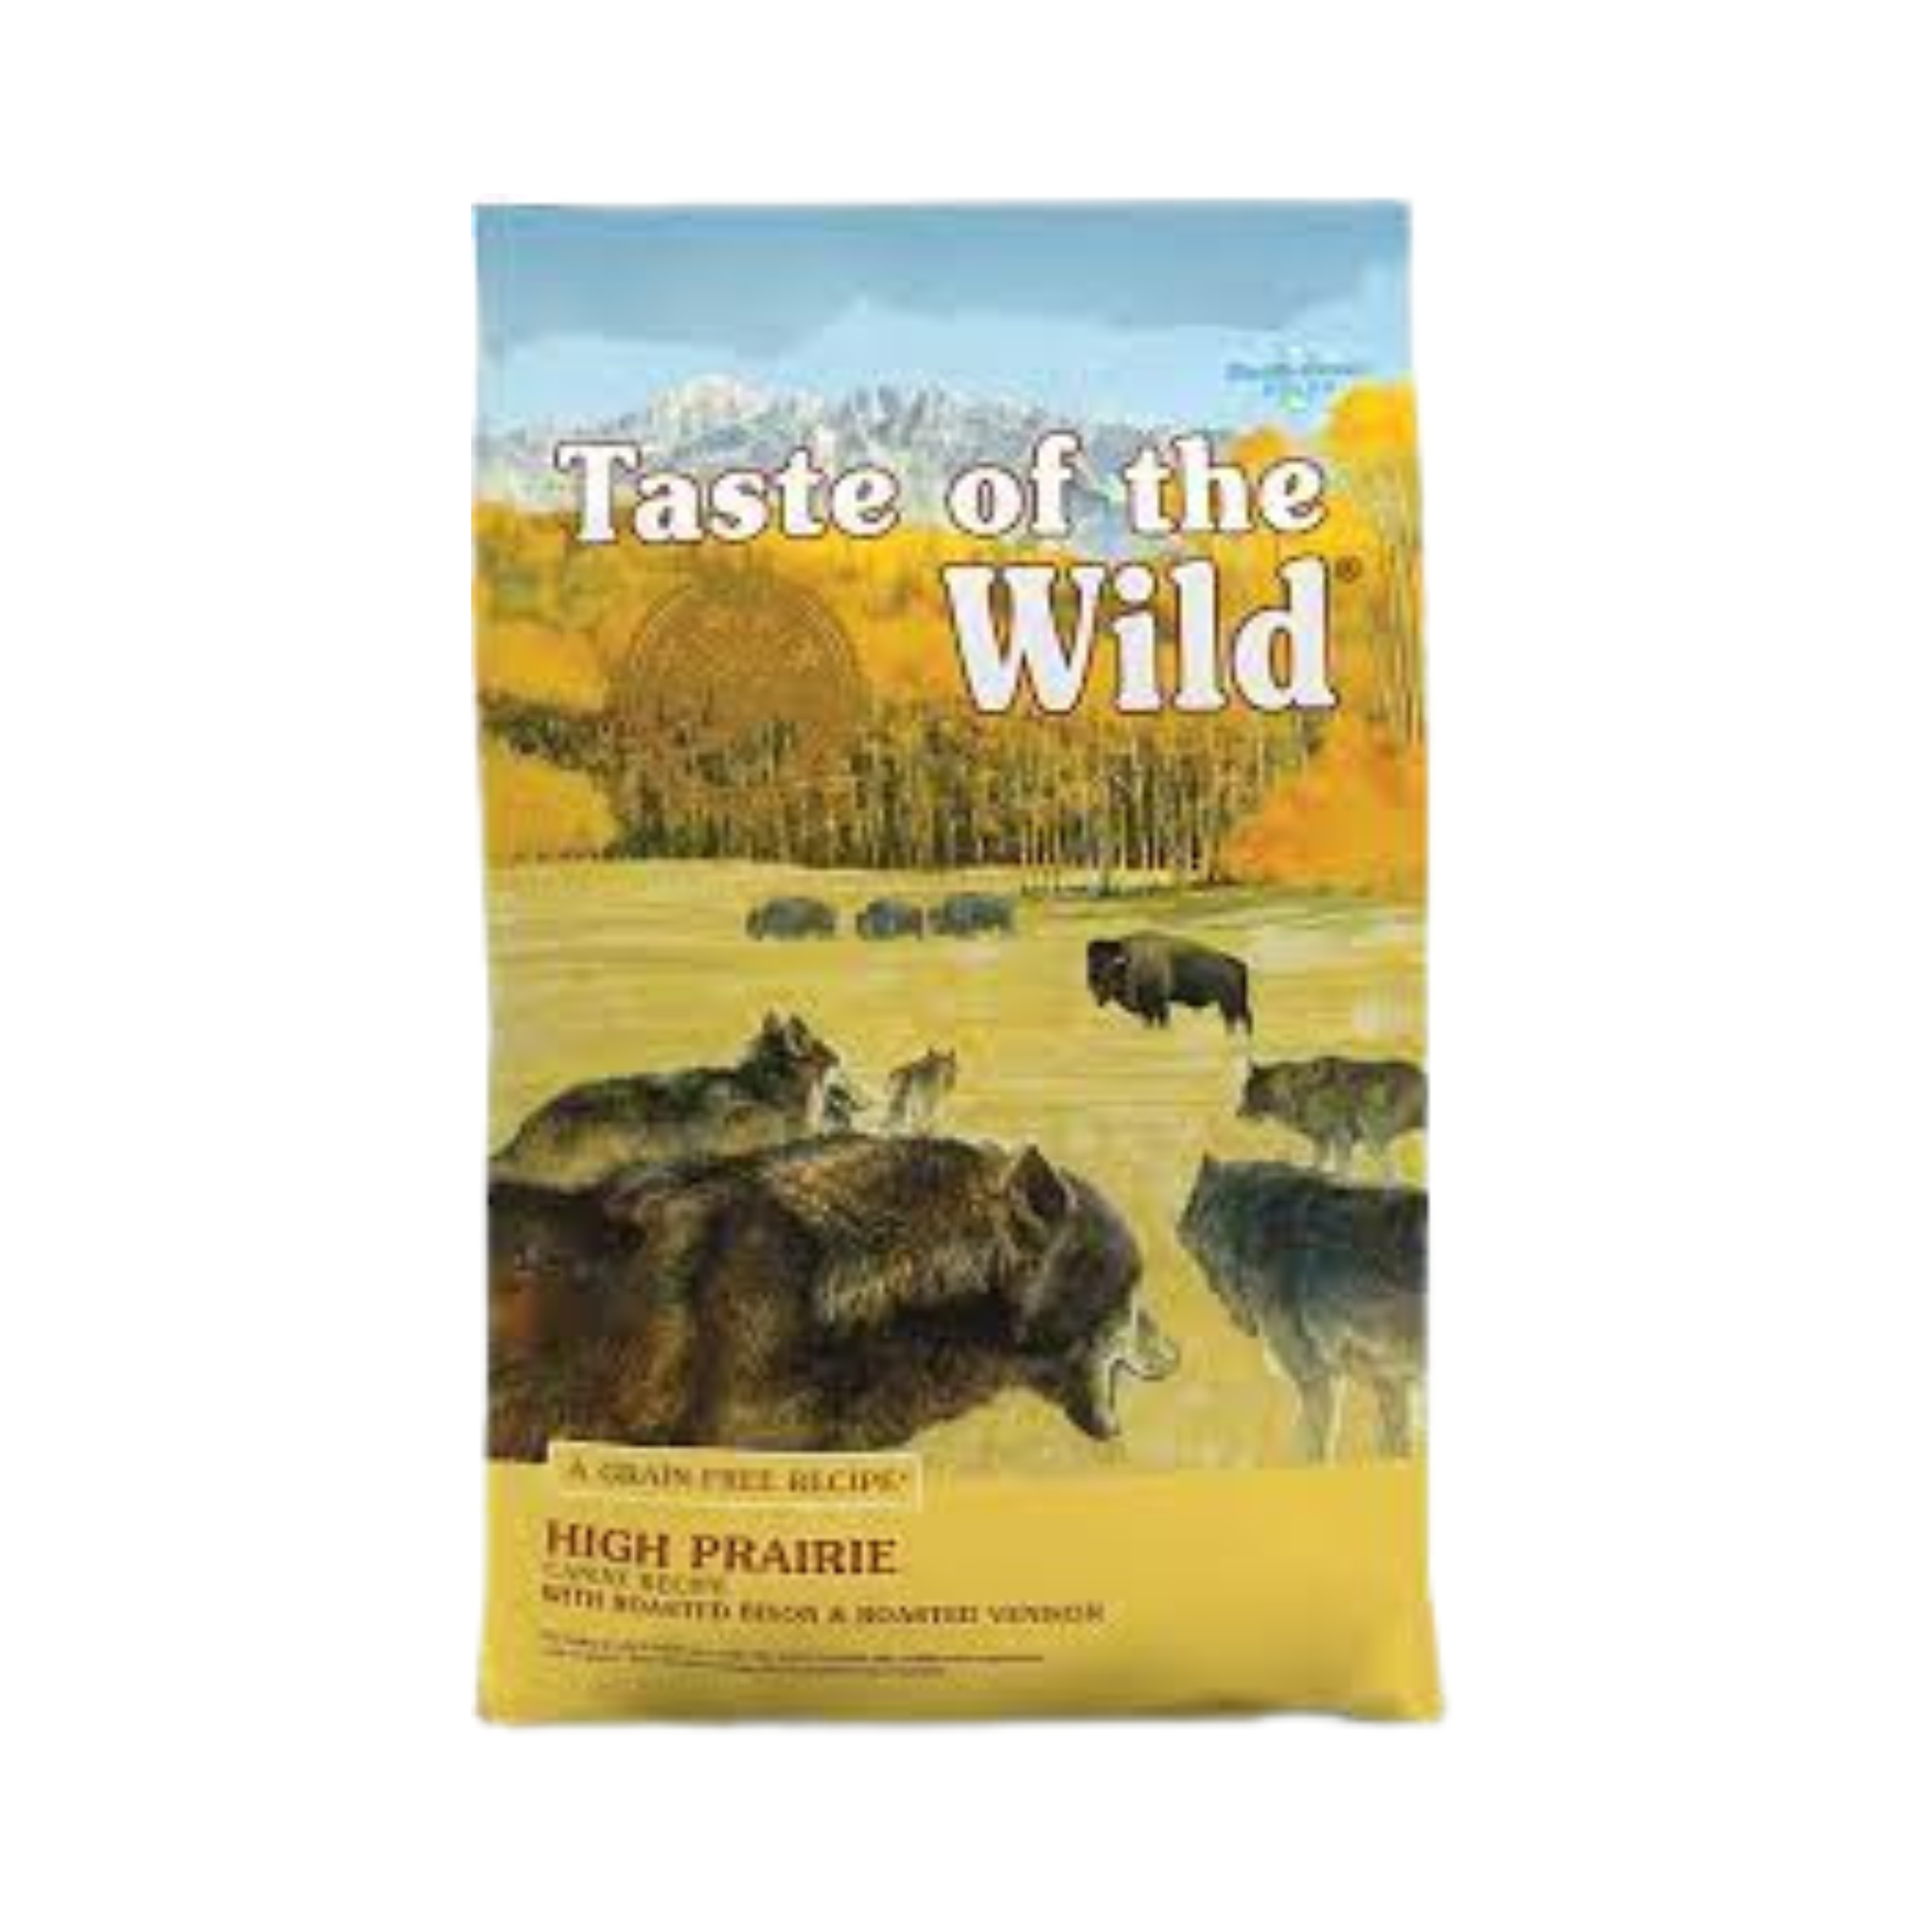 Taste of the Wild High Prairie Dog